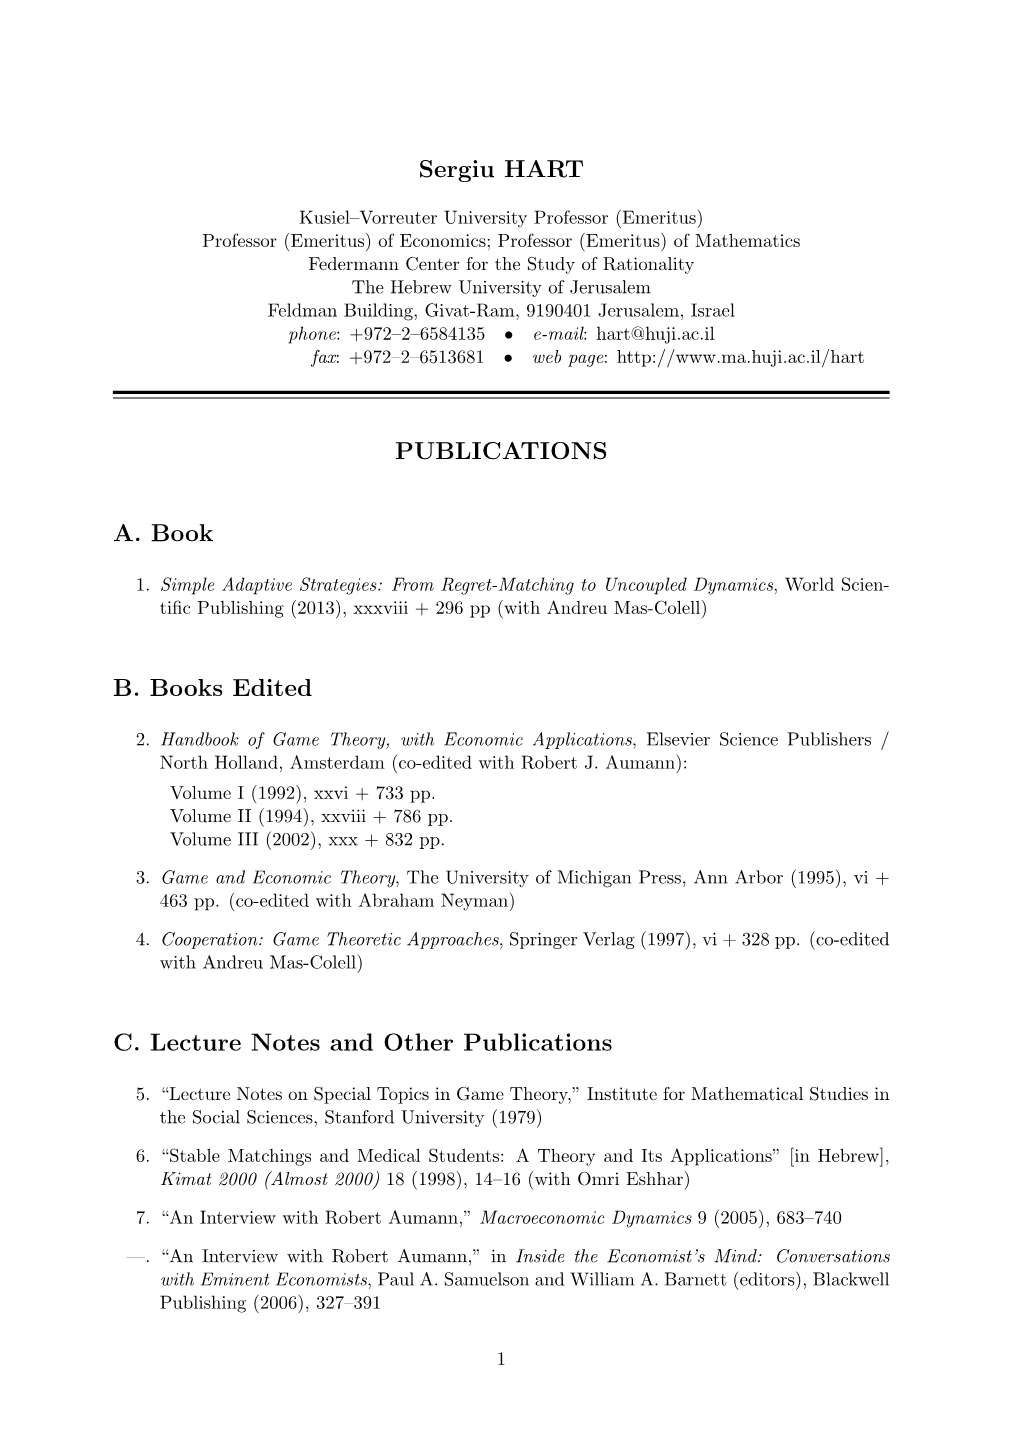 Sergiu HART PUBLICATIONS A. Book B. Books Edited C. Lecture Notes